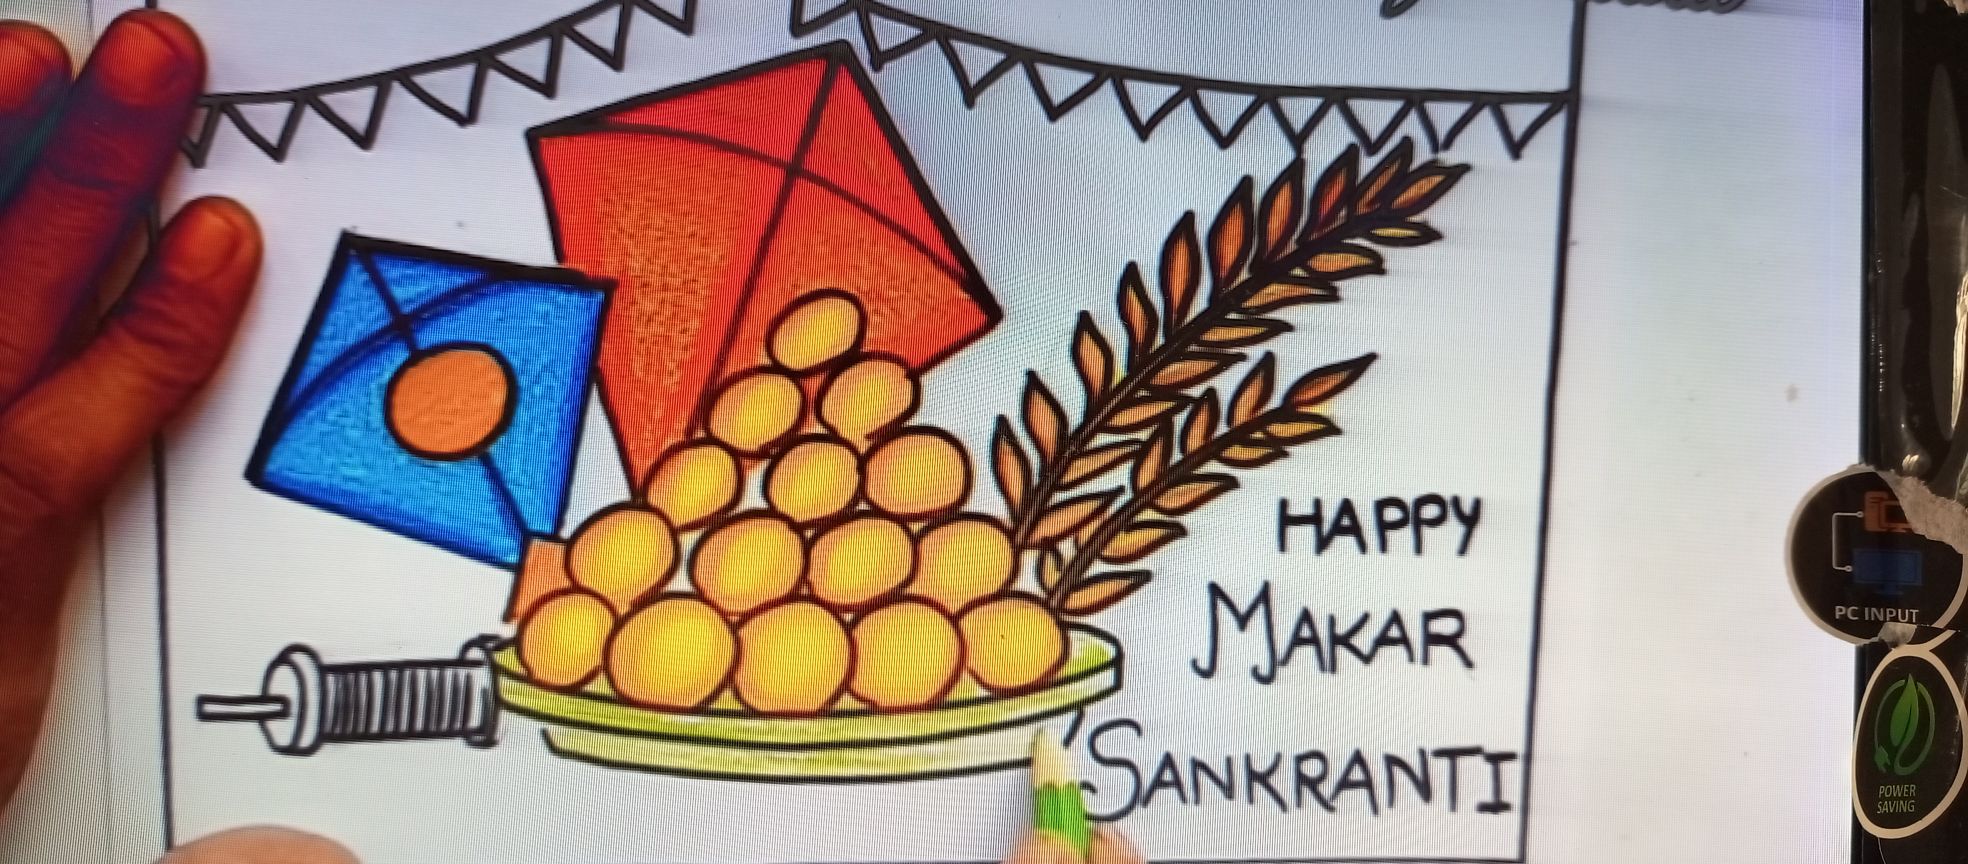 Easy Makar Sankranti Drawing Idea // Happy Makar Sankranti Drawing Easy | Makar  sankranti, Easy drawings, Happy makar sankranti